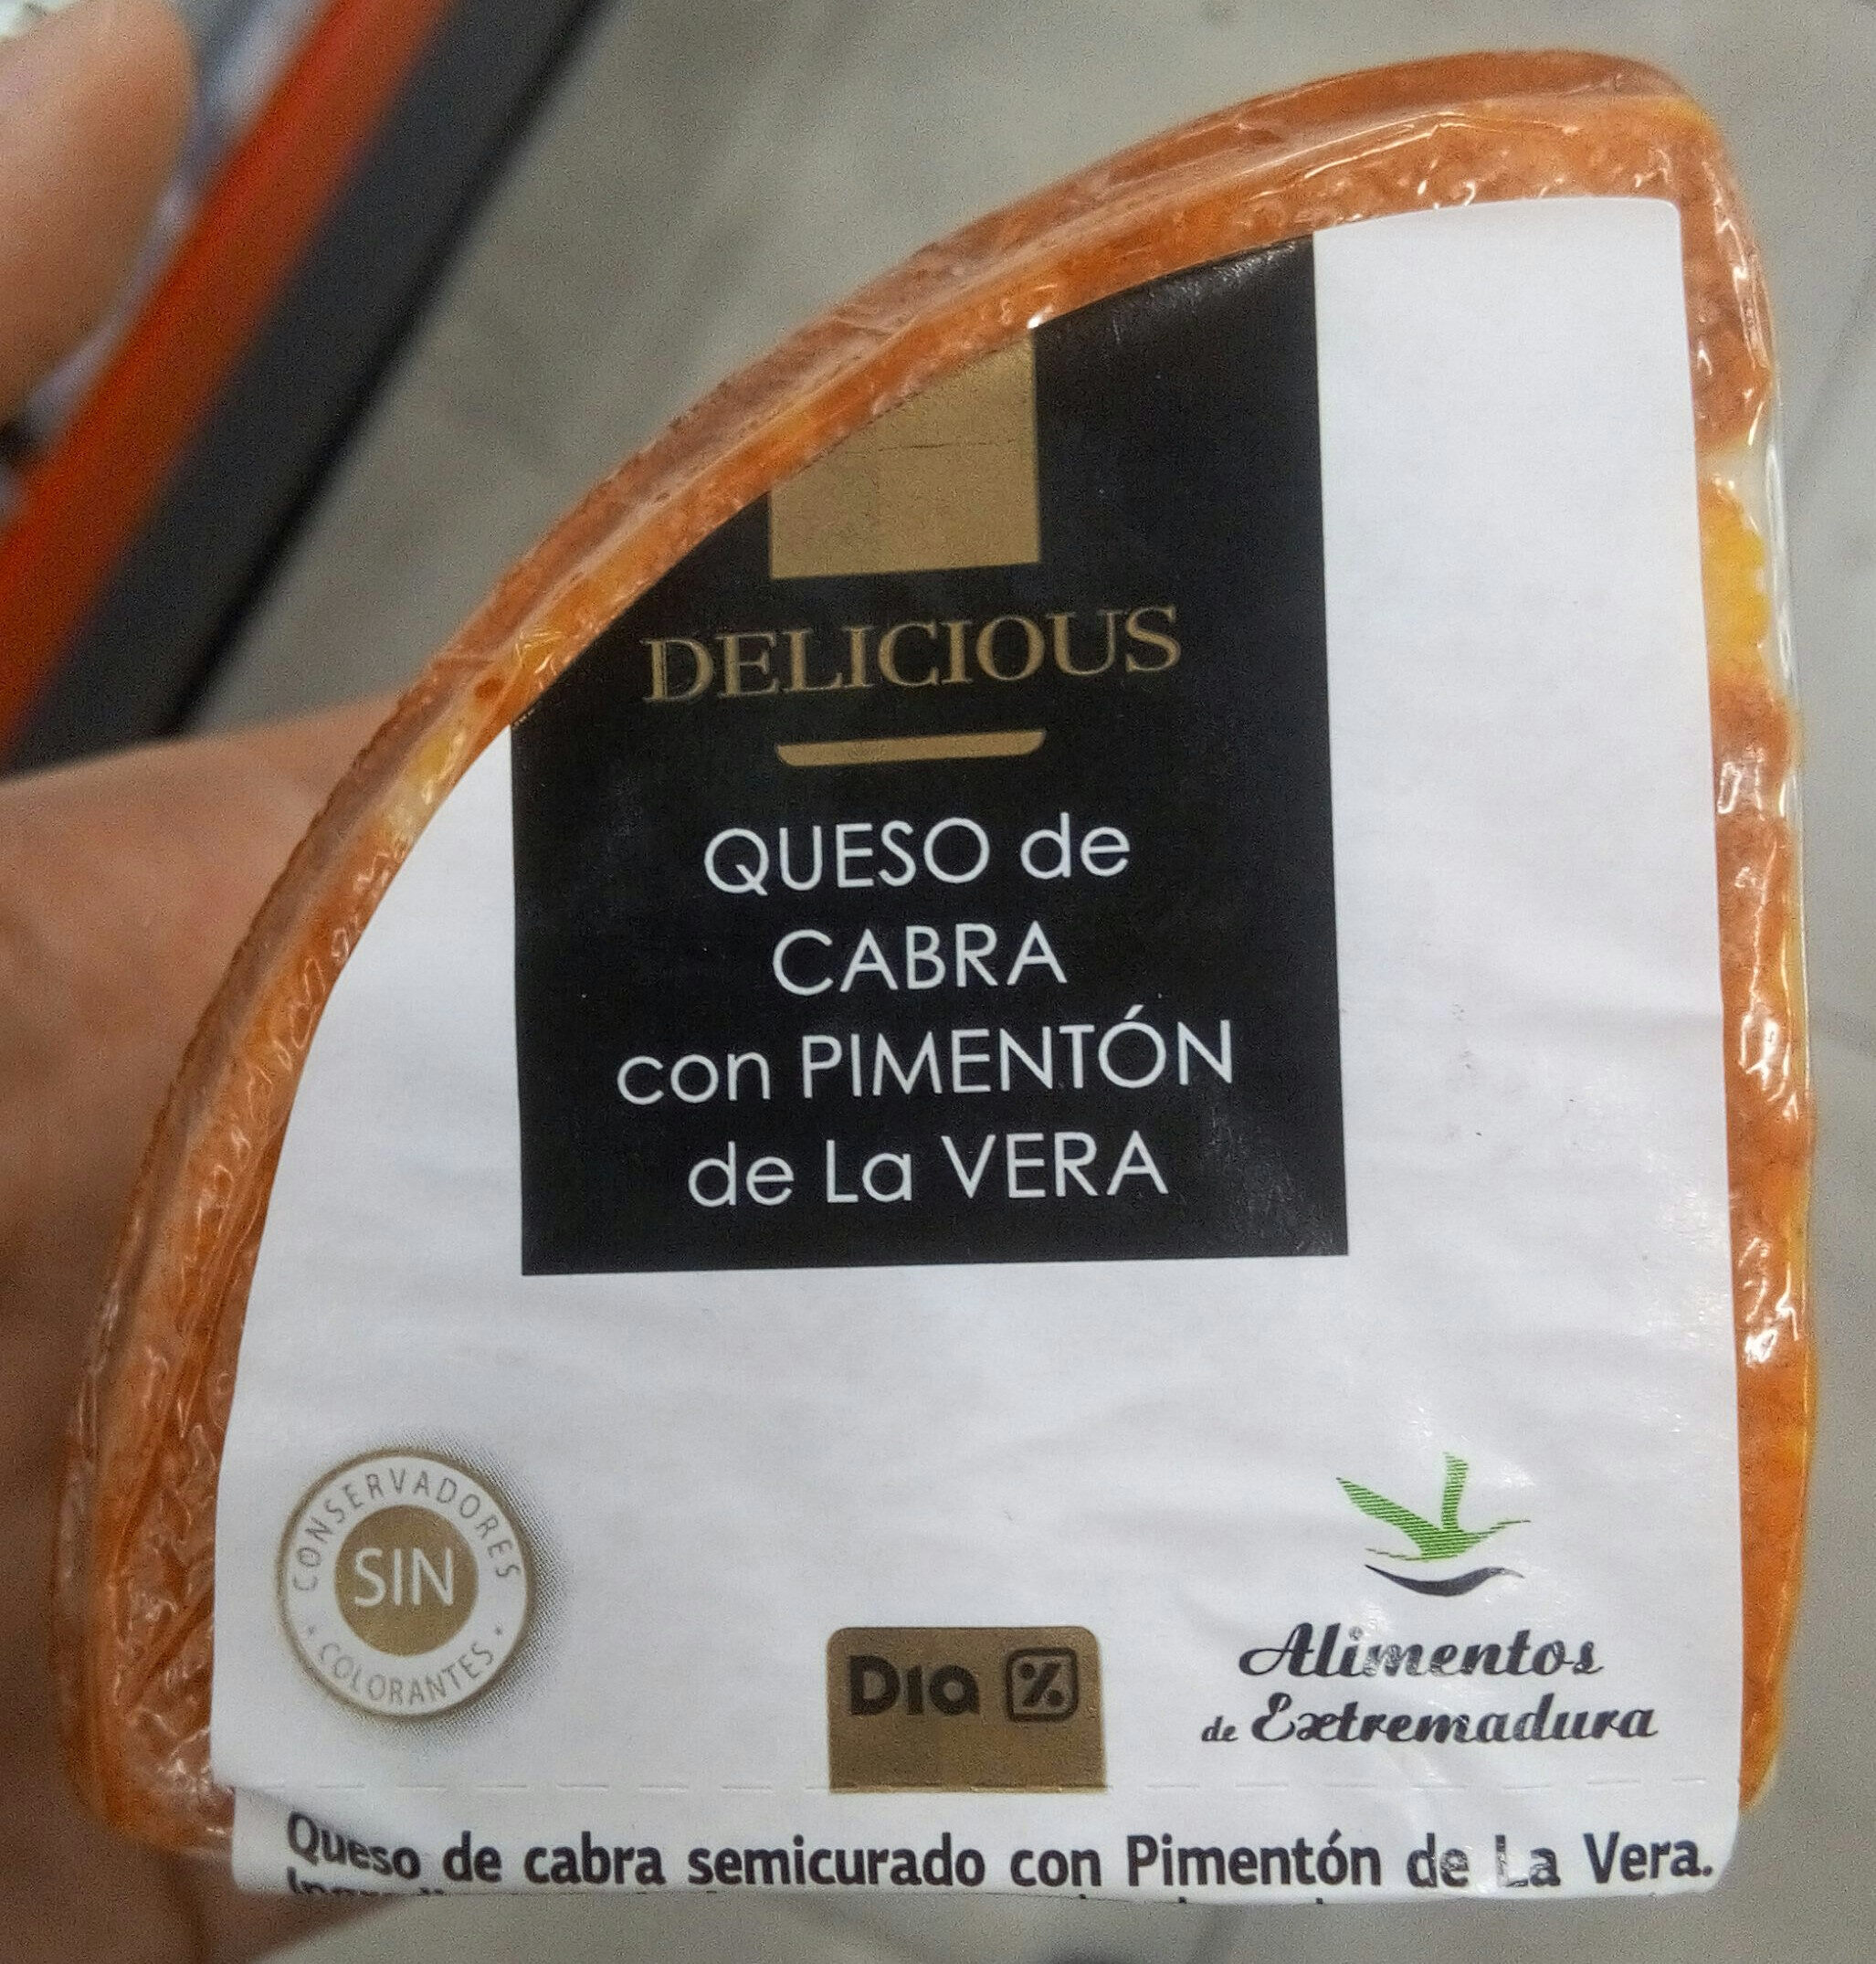 Queso de cabra con pimentón de La VERA - Product - es